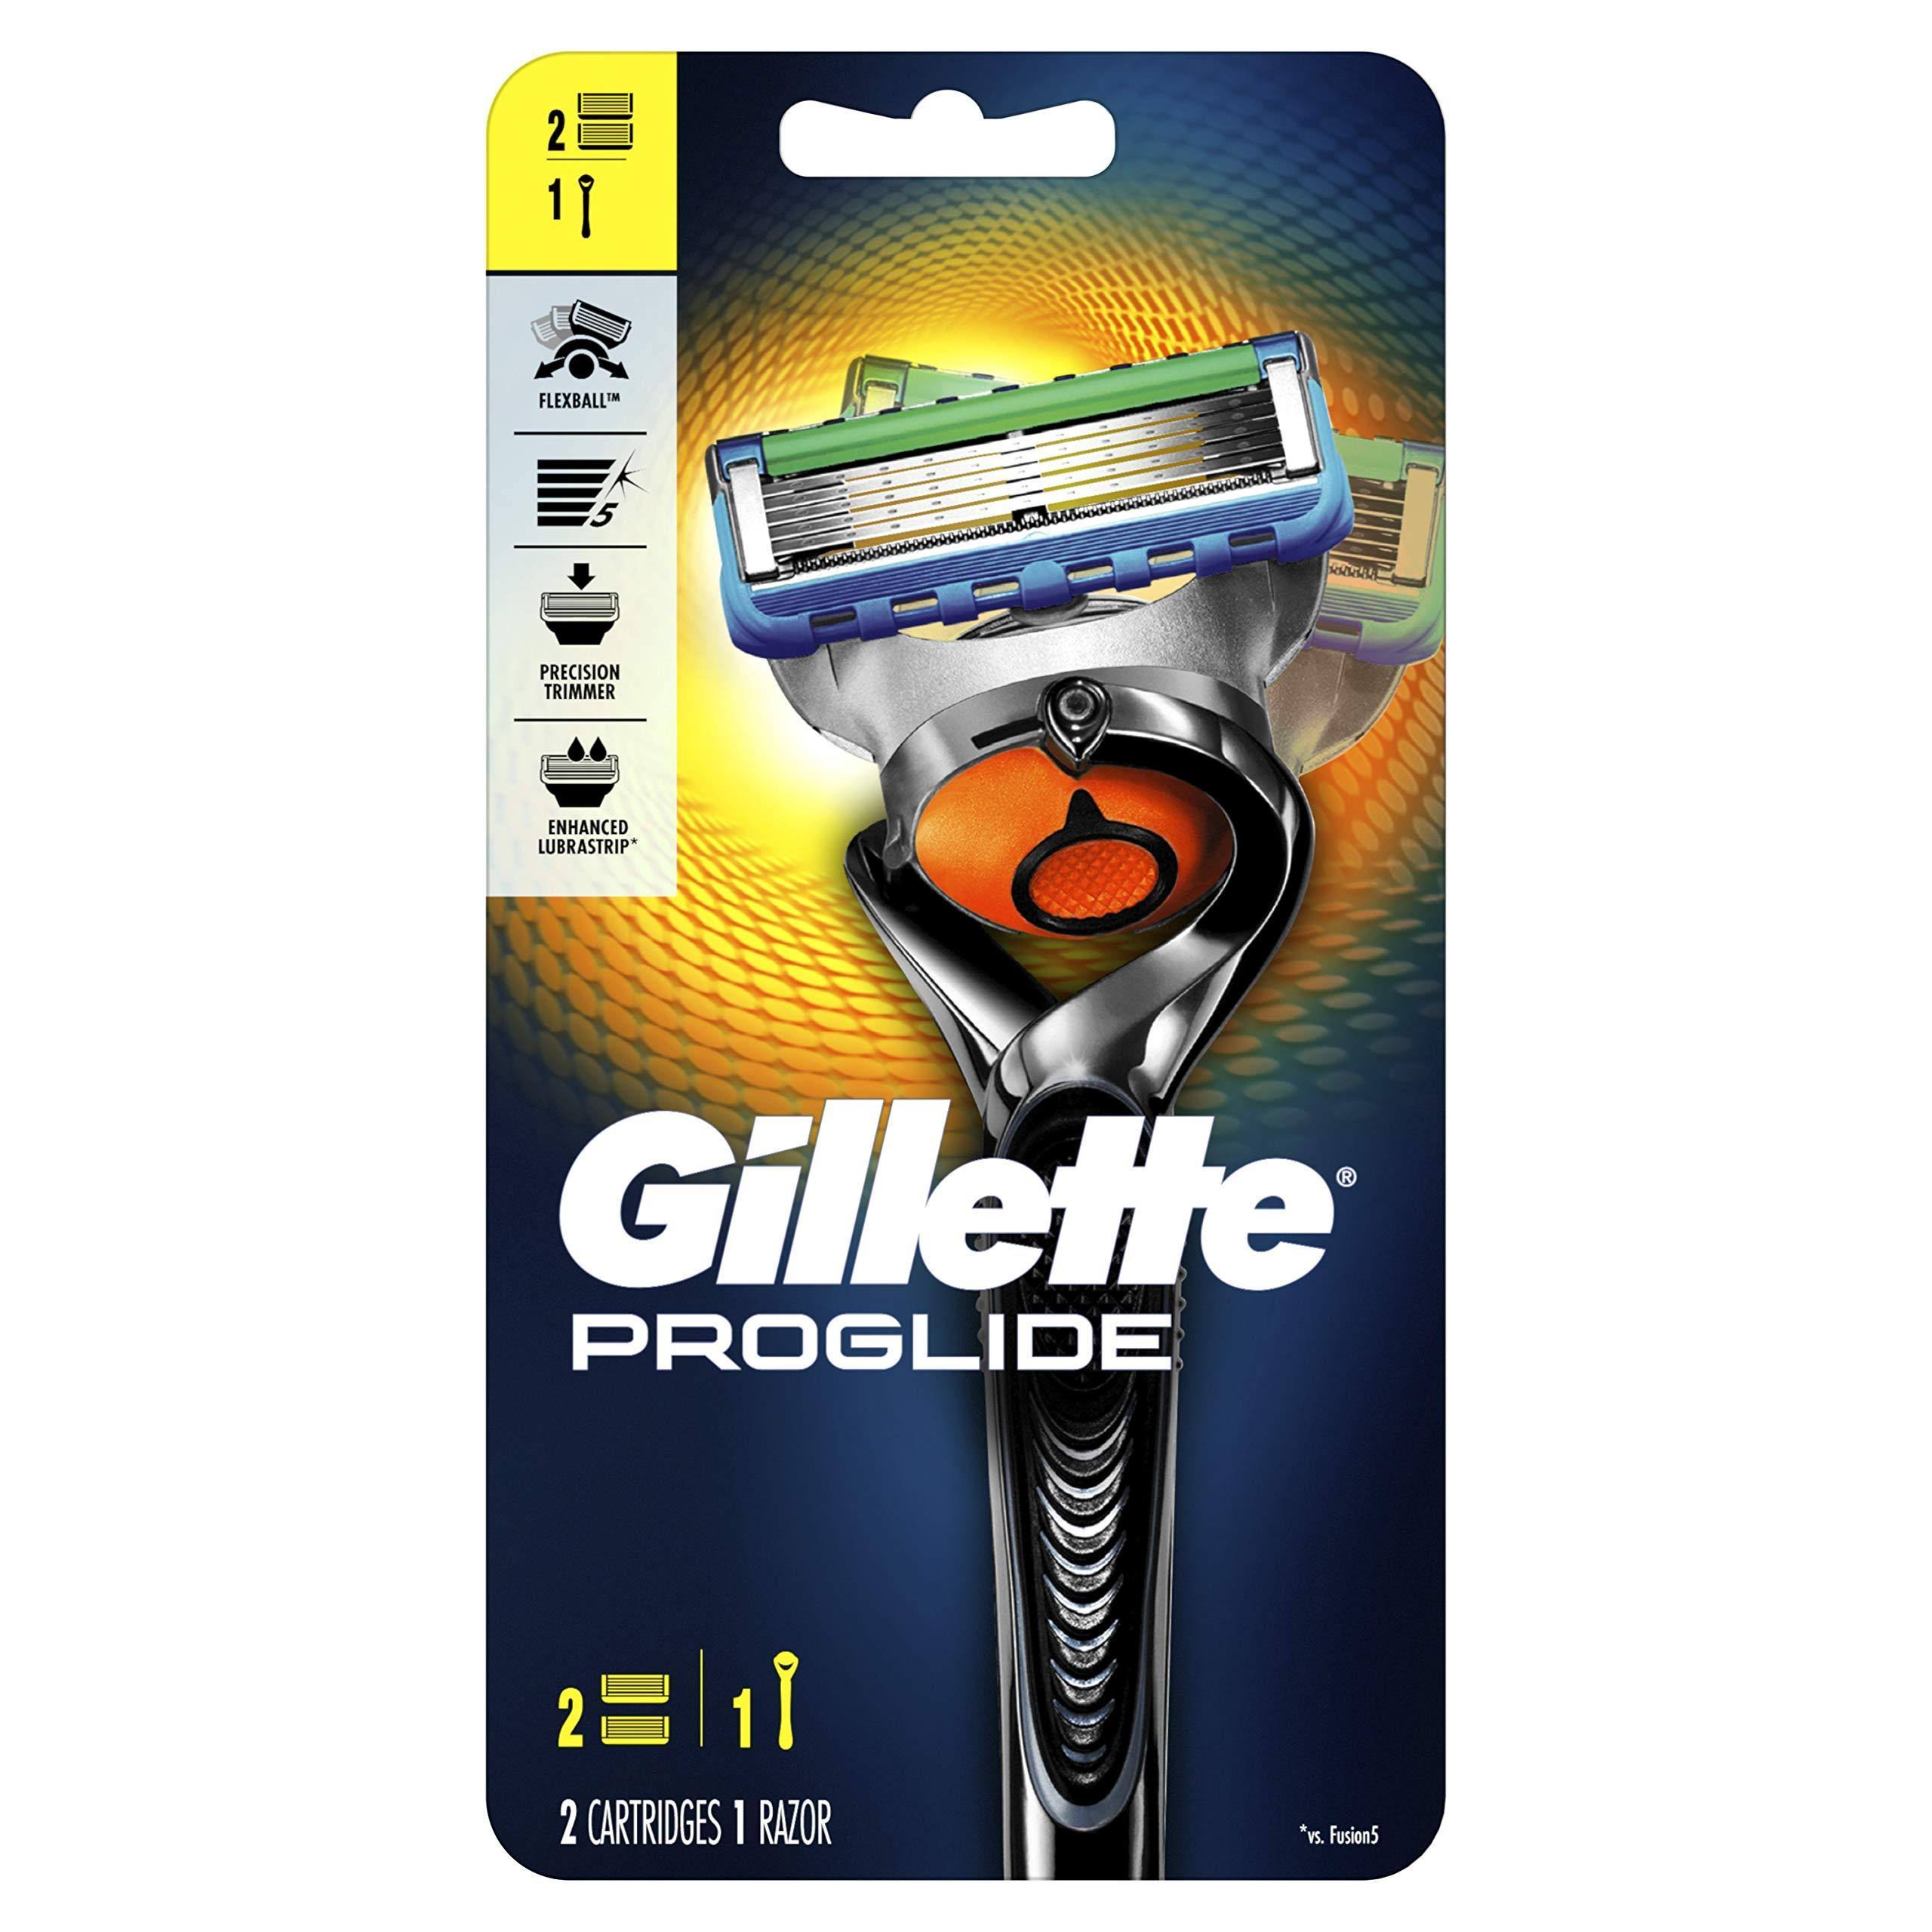 Gillette Fusion5 ProGlide Men’s Razor - Handle and 2 Blade Refills